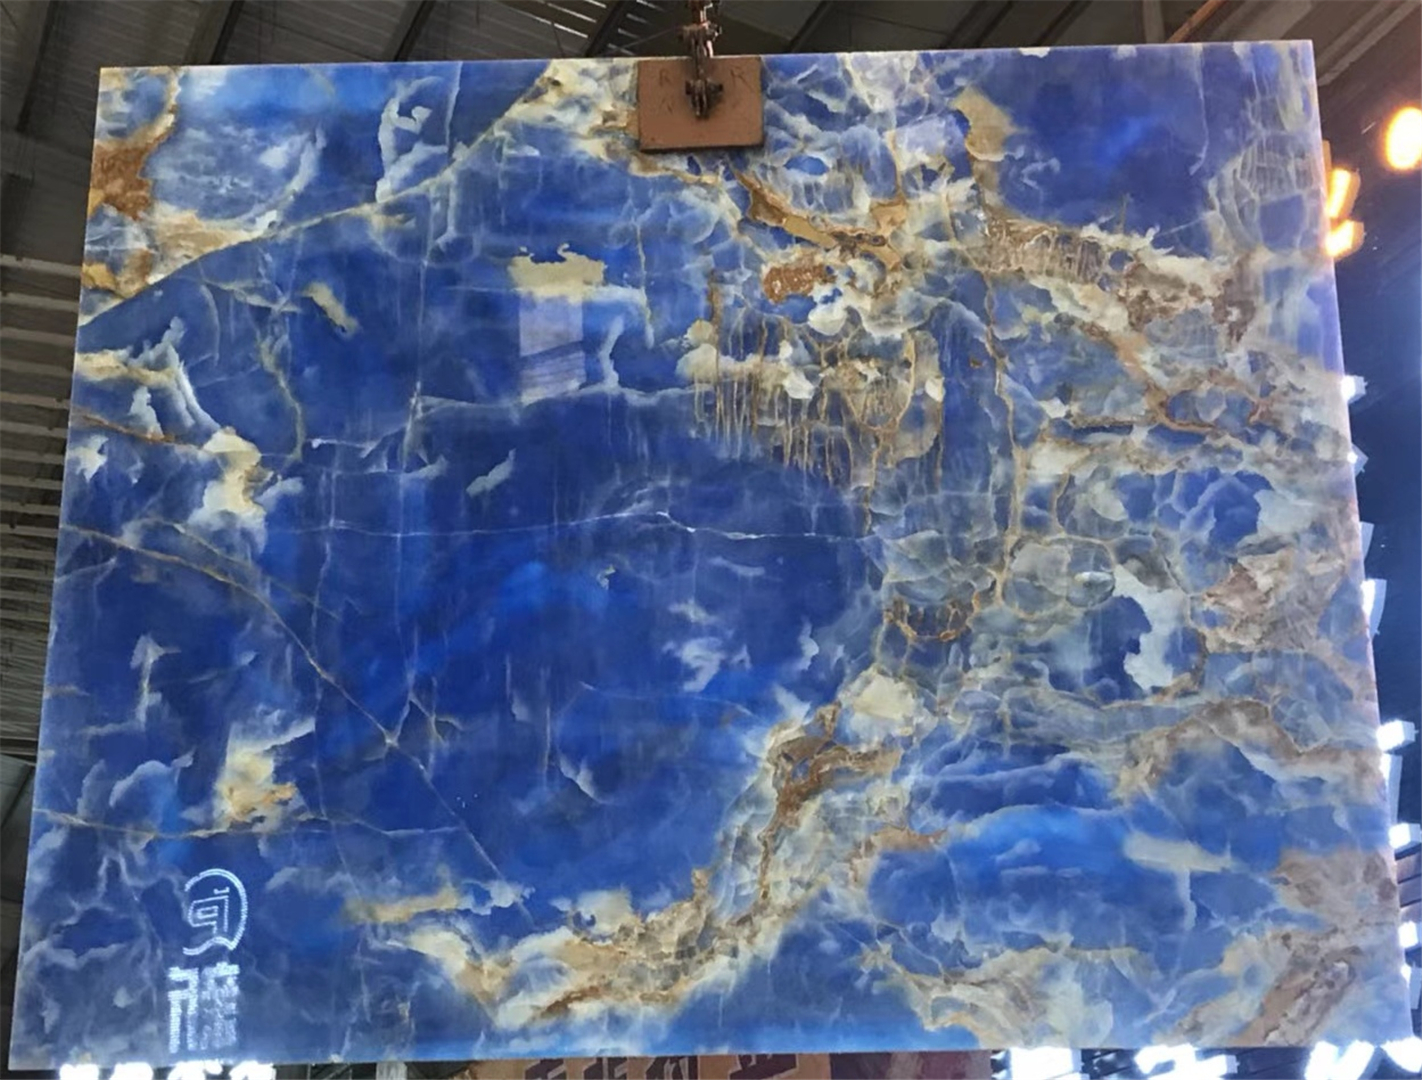 Kaufen Natürliche blaue Onyx-Steinplatte;Natürliche blaue Onyx-Steinplatte Preis;Natürliche blaue Onyx-Steinplatte Marken;Natürliche blaue Onyx-Steinplatte Hersteller;Natürliche blaue Onyx-Steinplatte Zitat;Natürliche blaue Onyx-Steinplatte Unternehmen